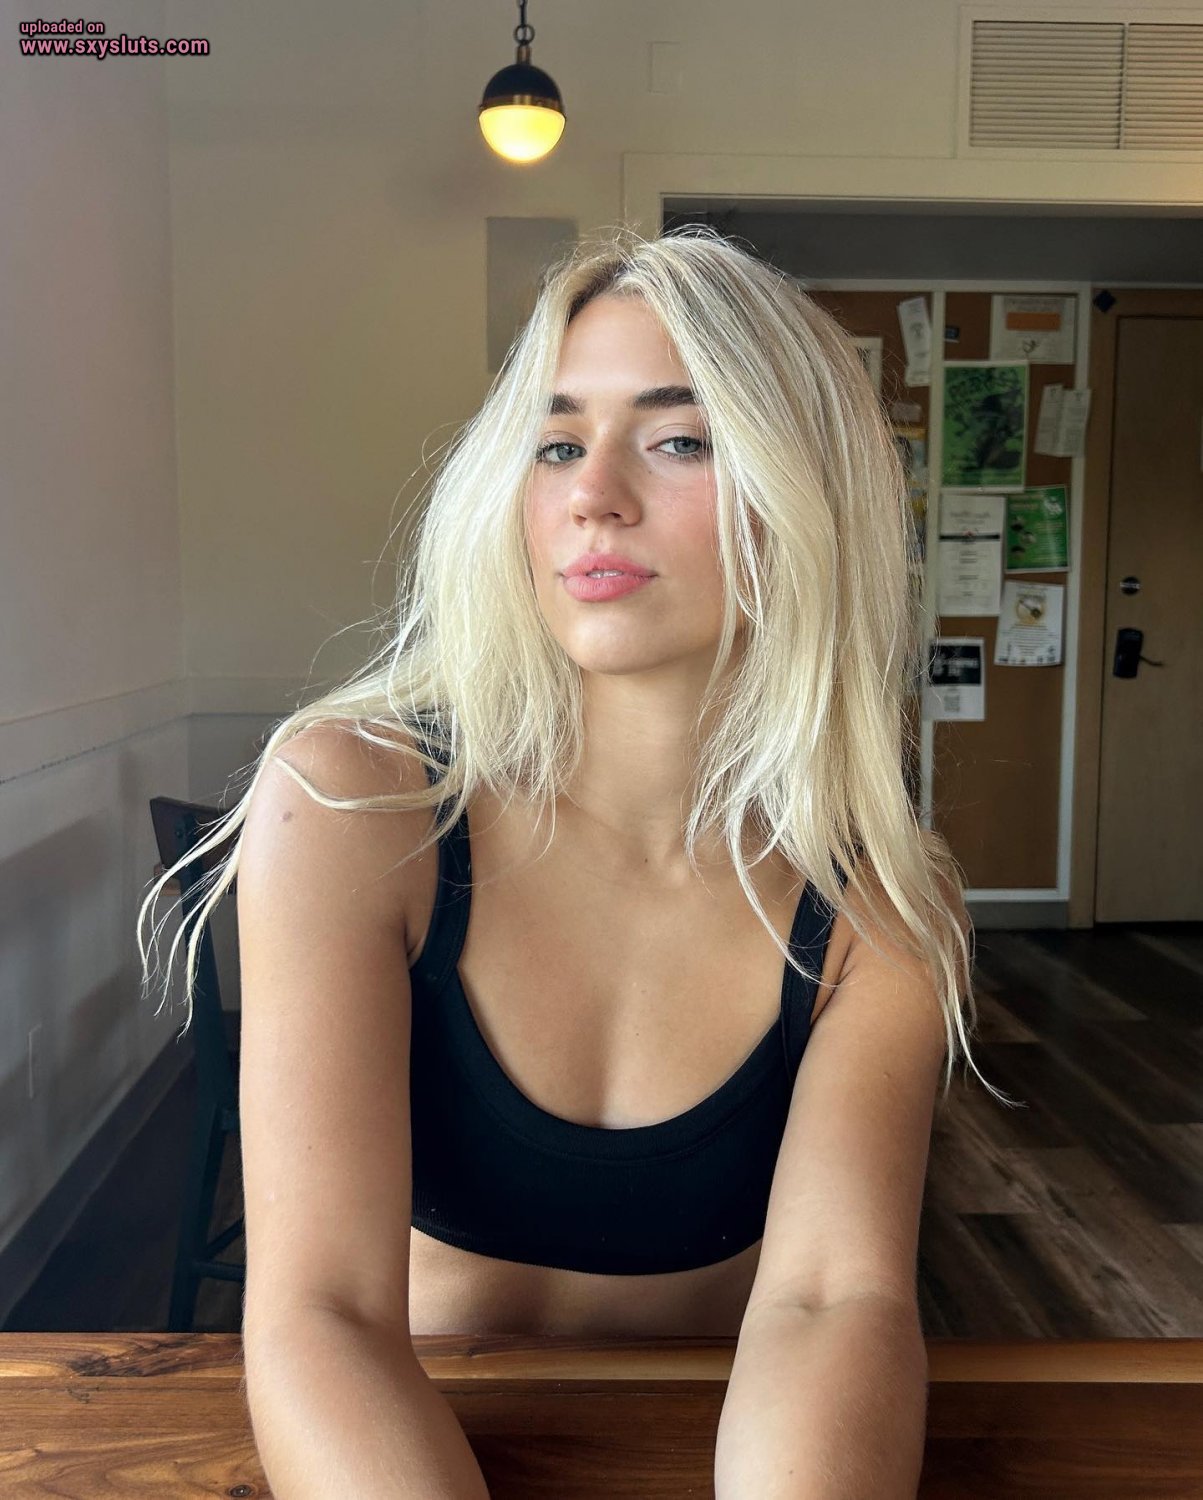 Rachel hot blonde college teen exposed